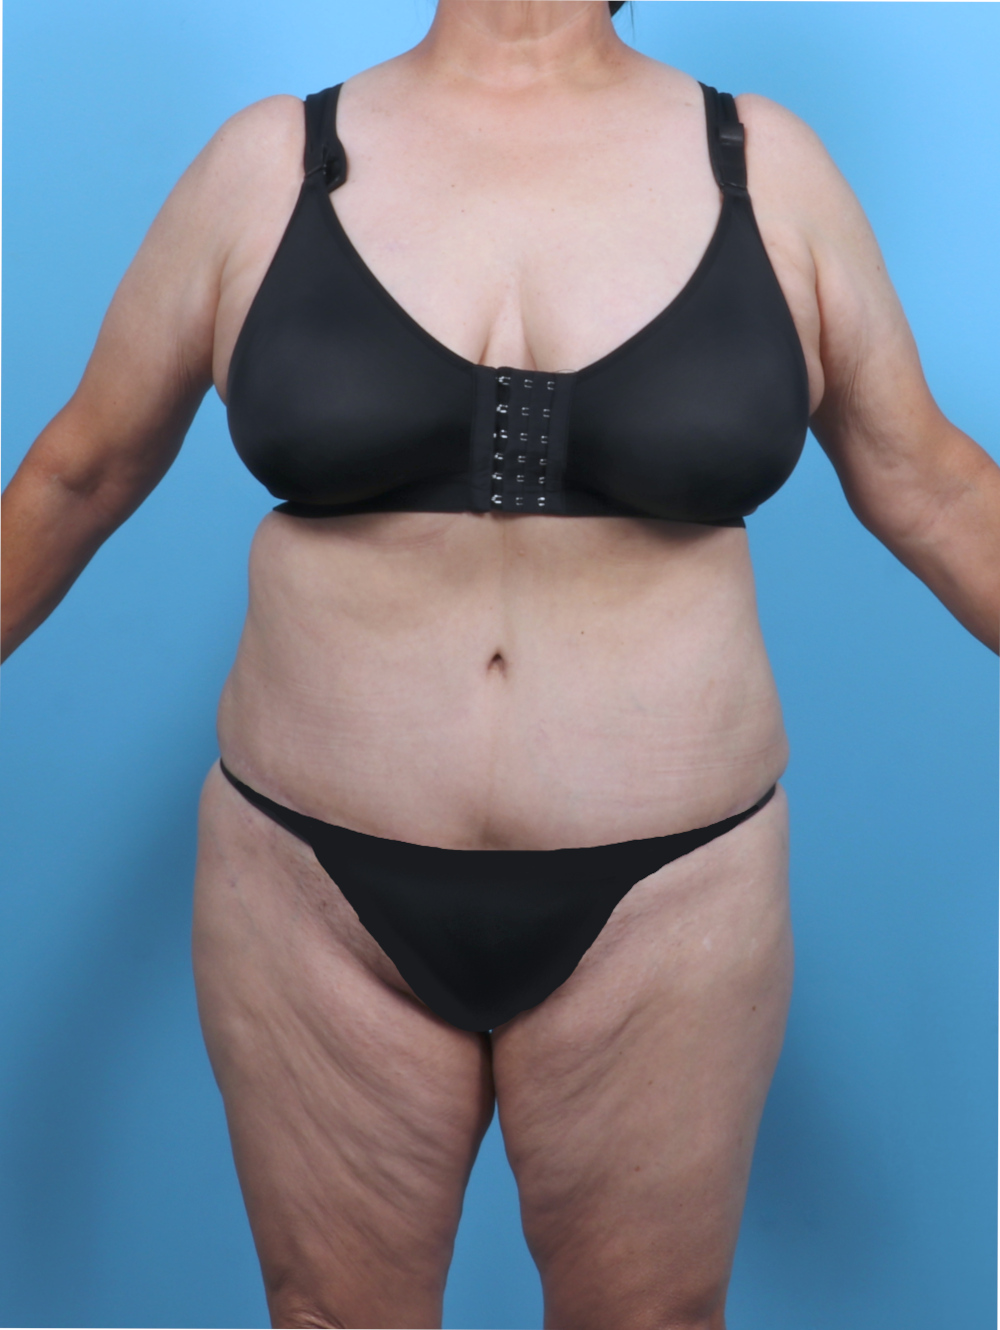 Liposuction Patient Photo - Case 5763 - after view